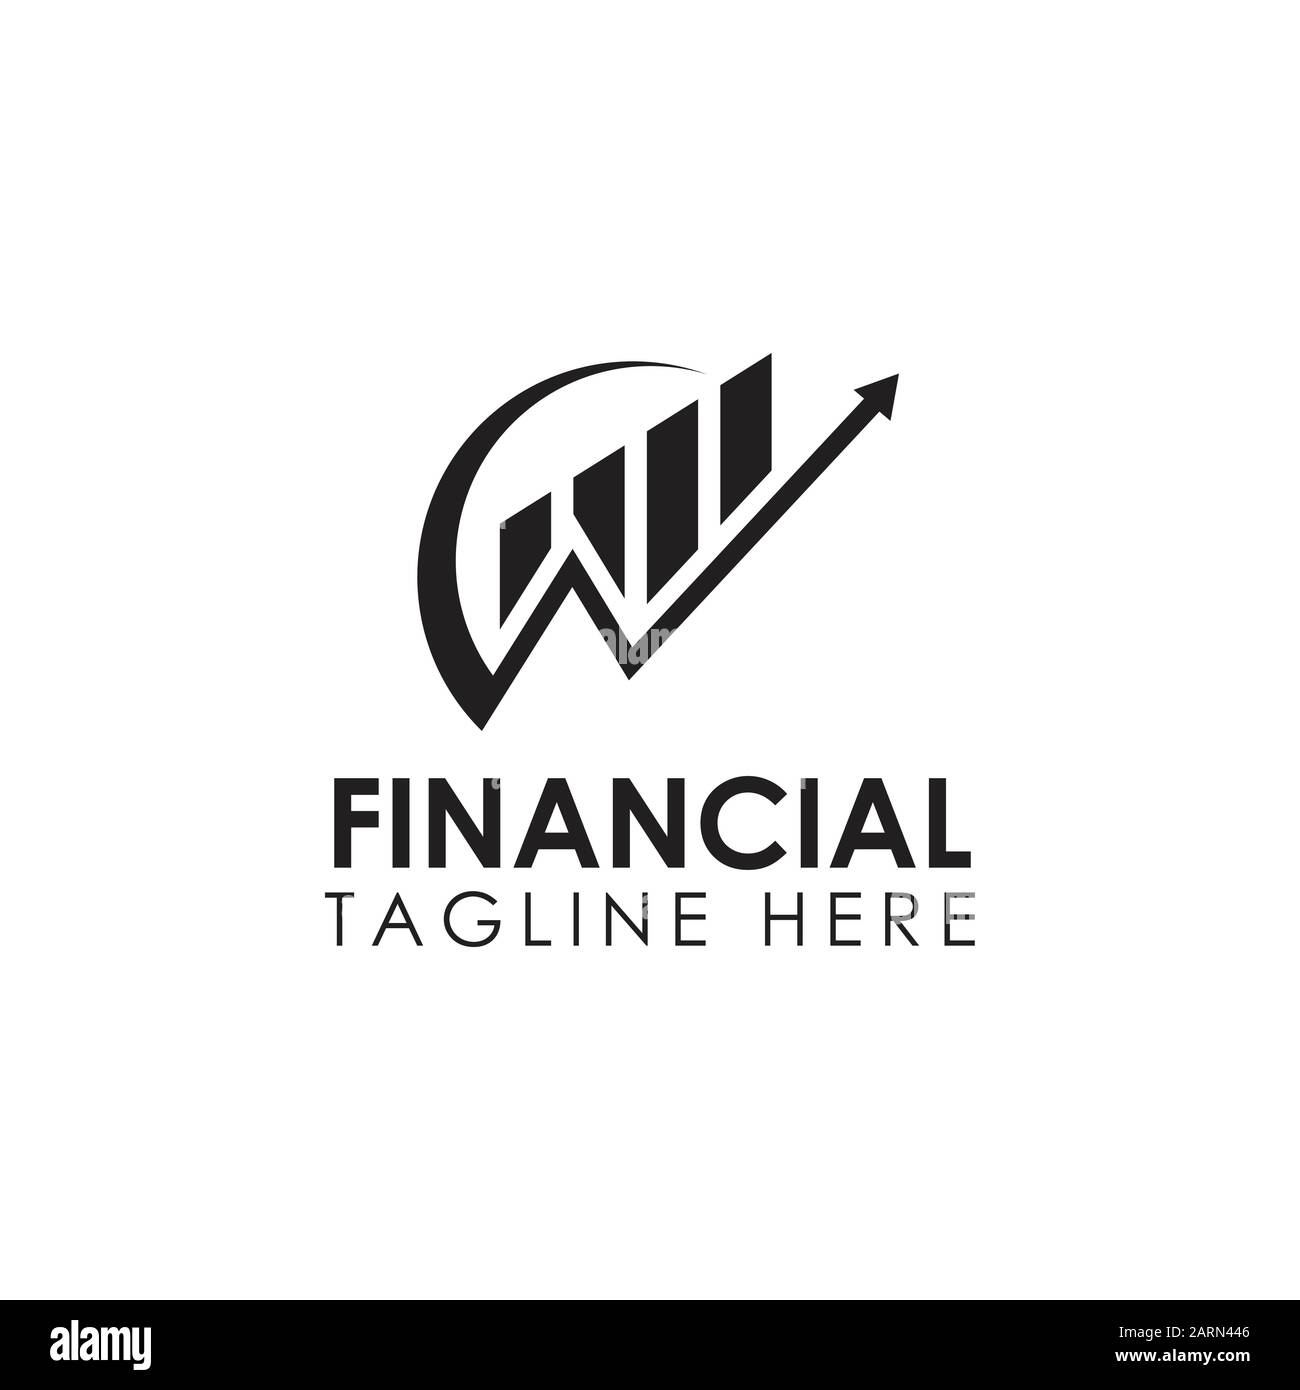 Diseño De Logotipo De Negocio Financiero Y Contable. Gráfico De Marketing Logotipo De La Empresa Financiera Ilustración del Vector